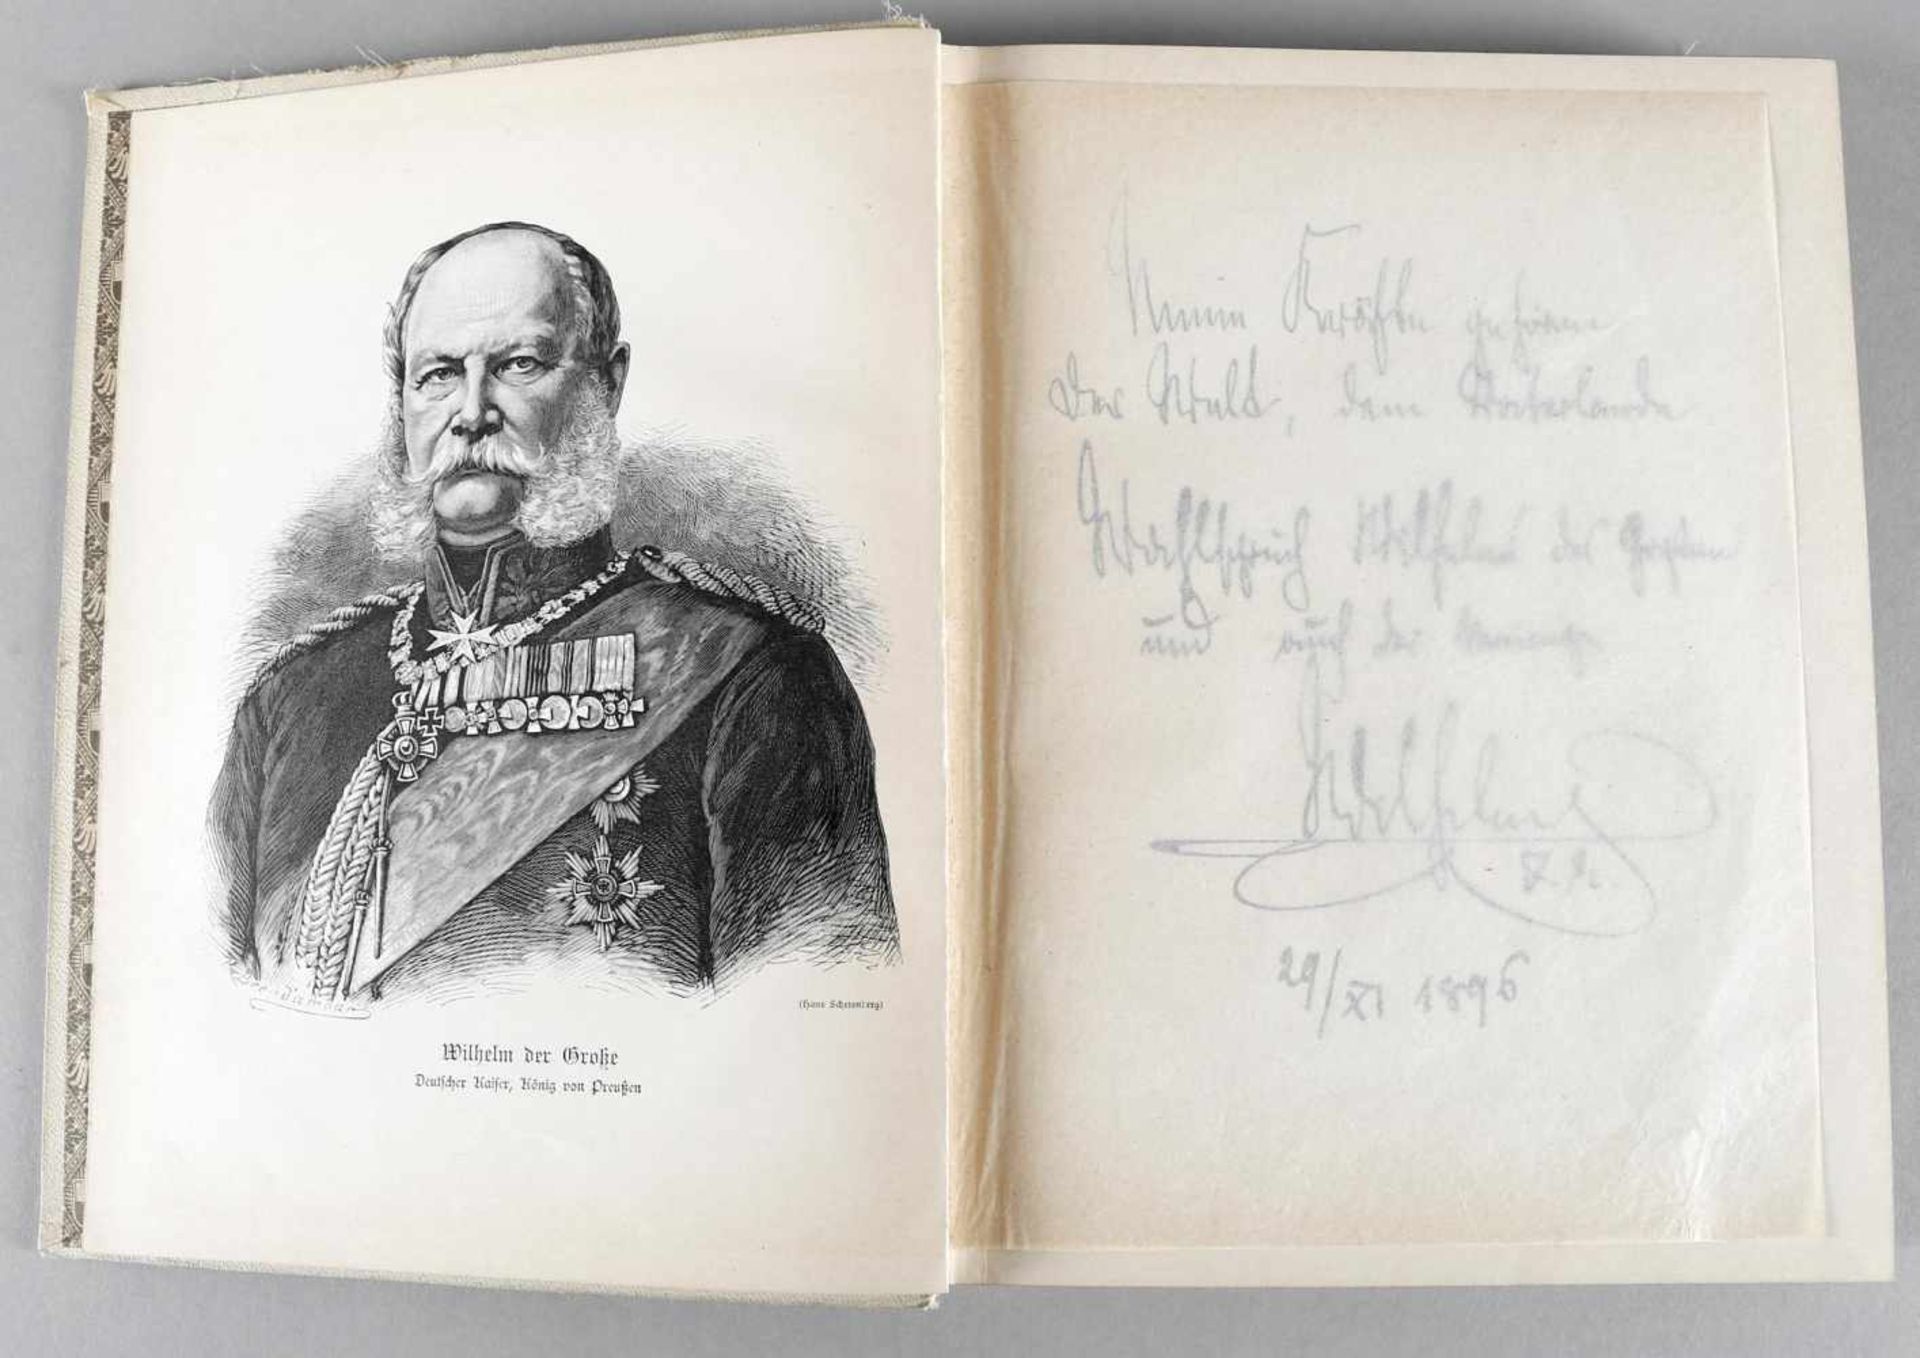 Unser Heldenkaiser 1797-1897Festschrift zum hundertjährigen Geburtstage Kaiser Wilhelm des Großen